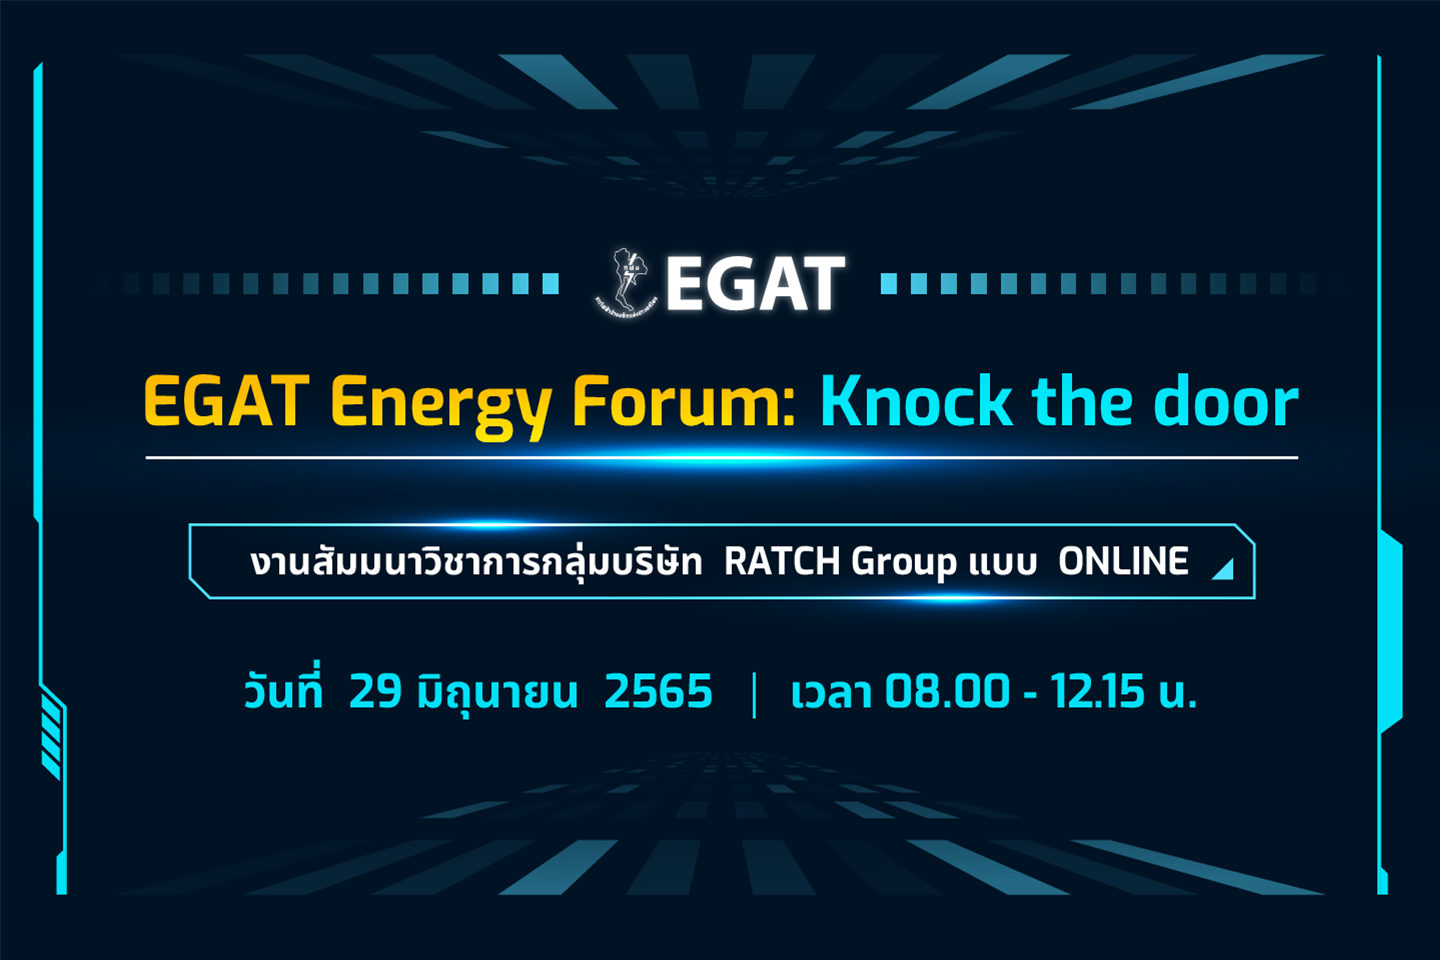 EGAT Energy Forum : Knock the door for RATCH (online)